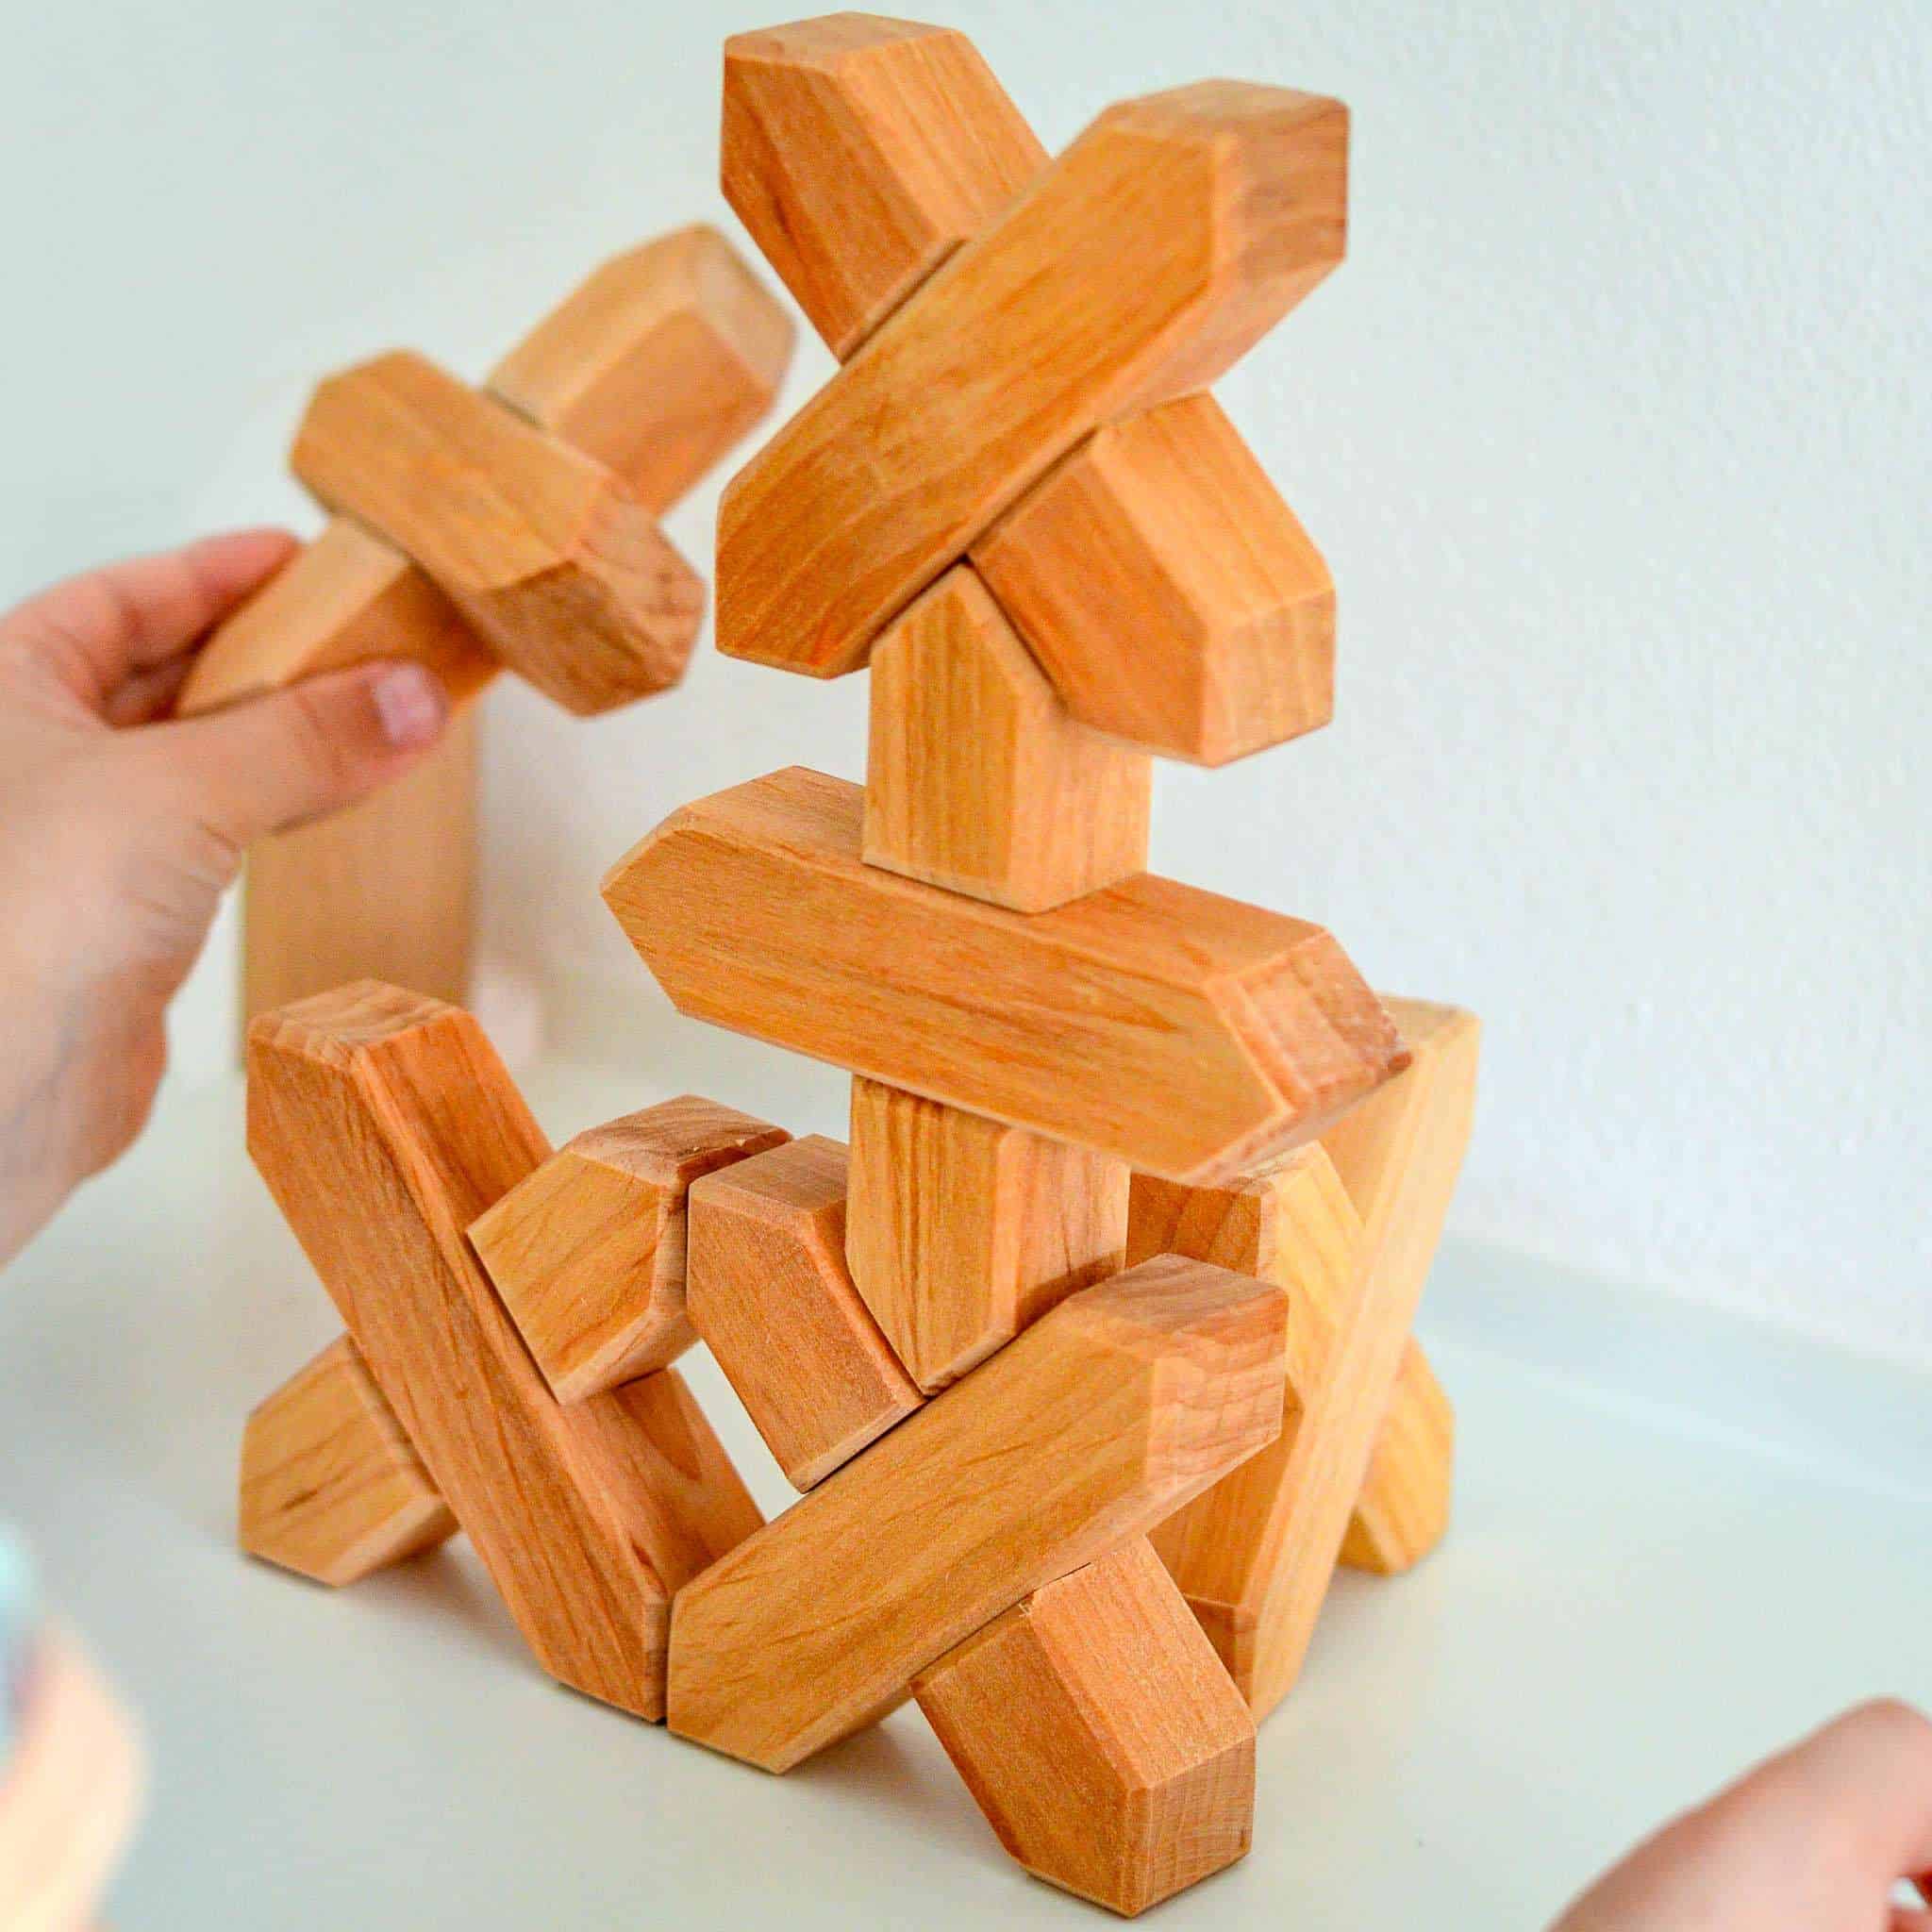 Bauspiel X-Blocks bricks 48 pieces